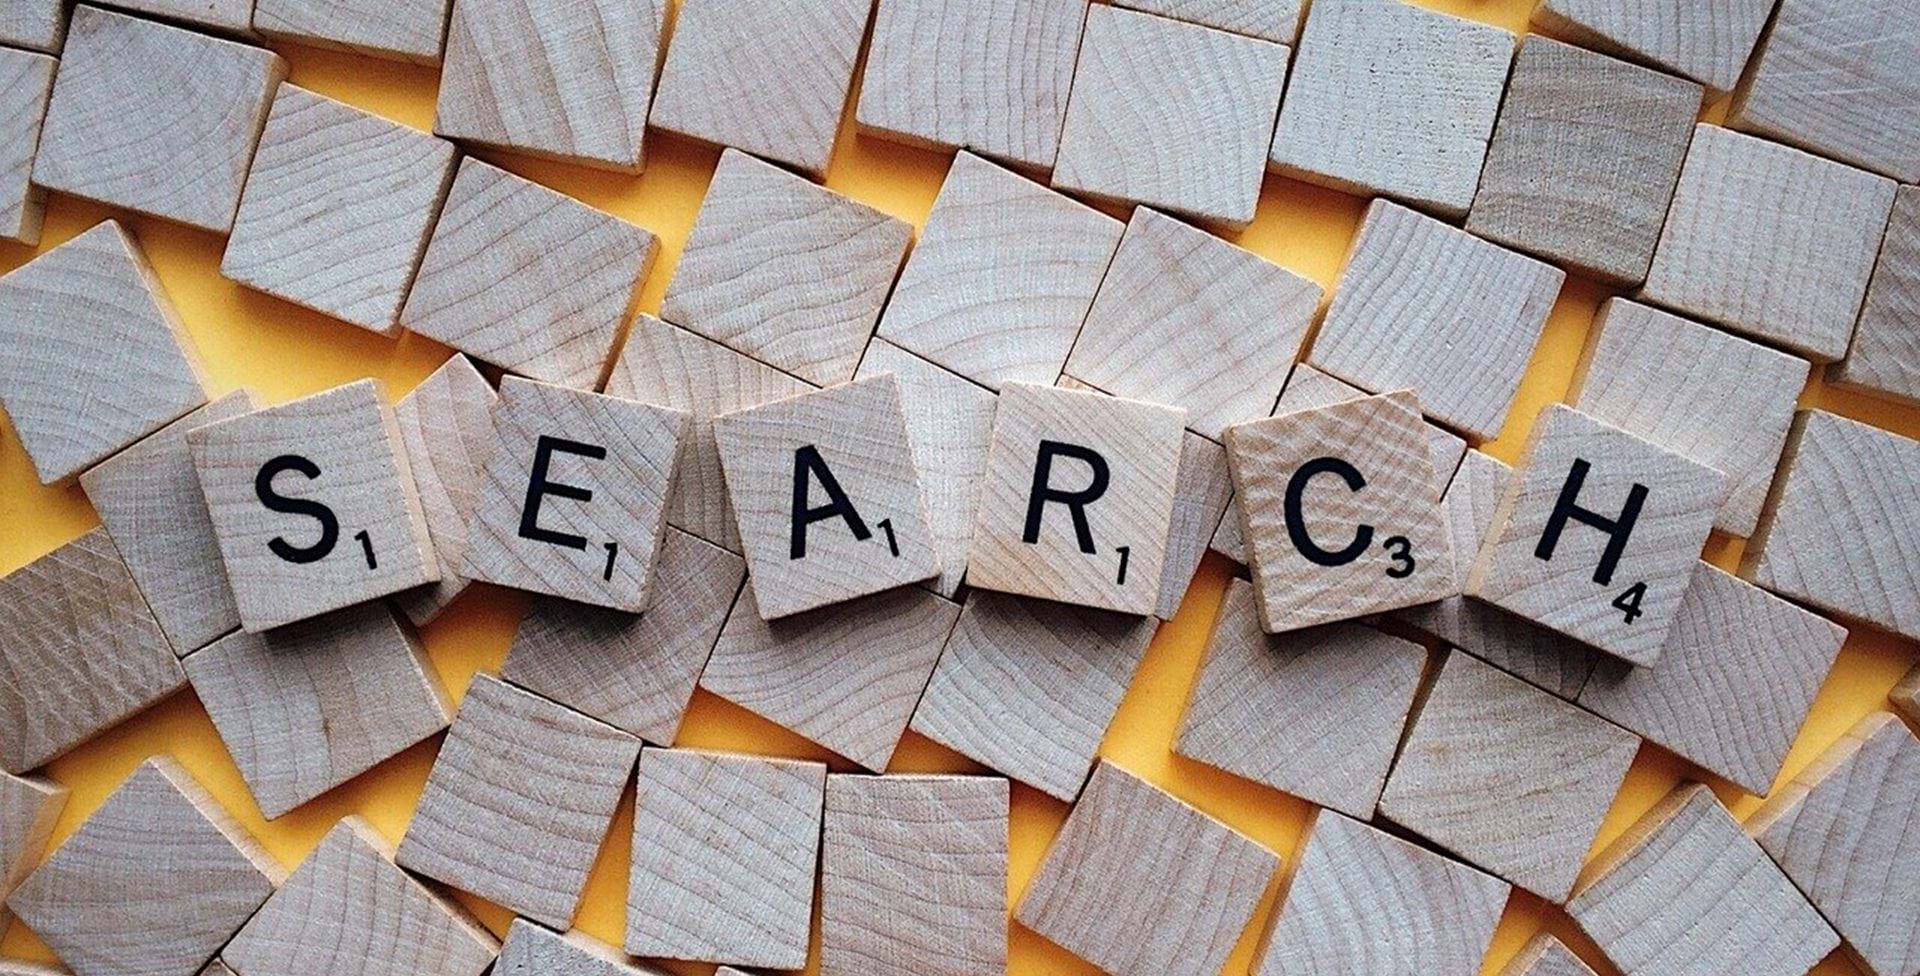 Scrabble-brikker danner ordet 'search' på en række